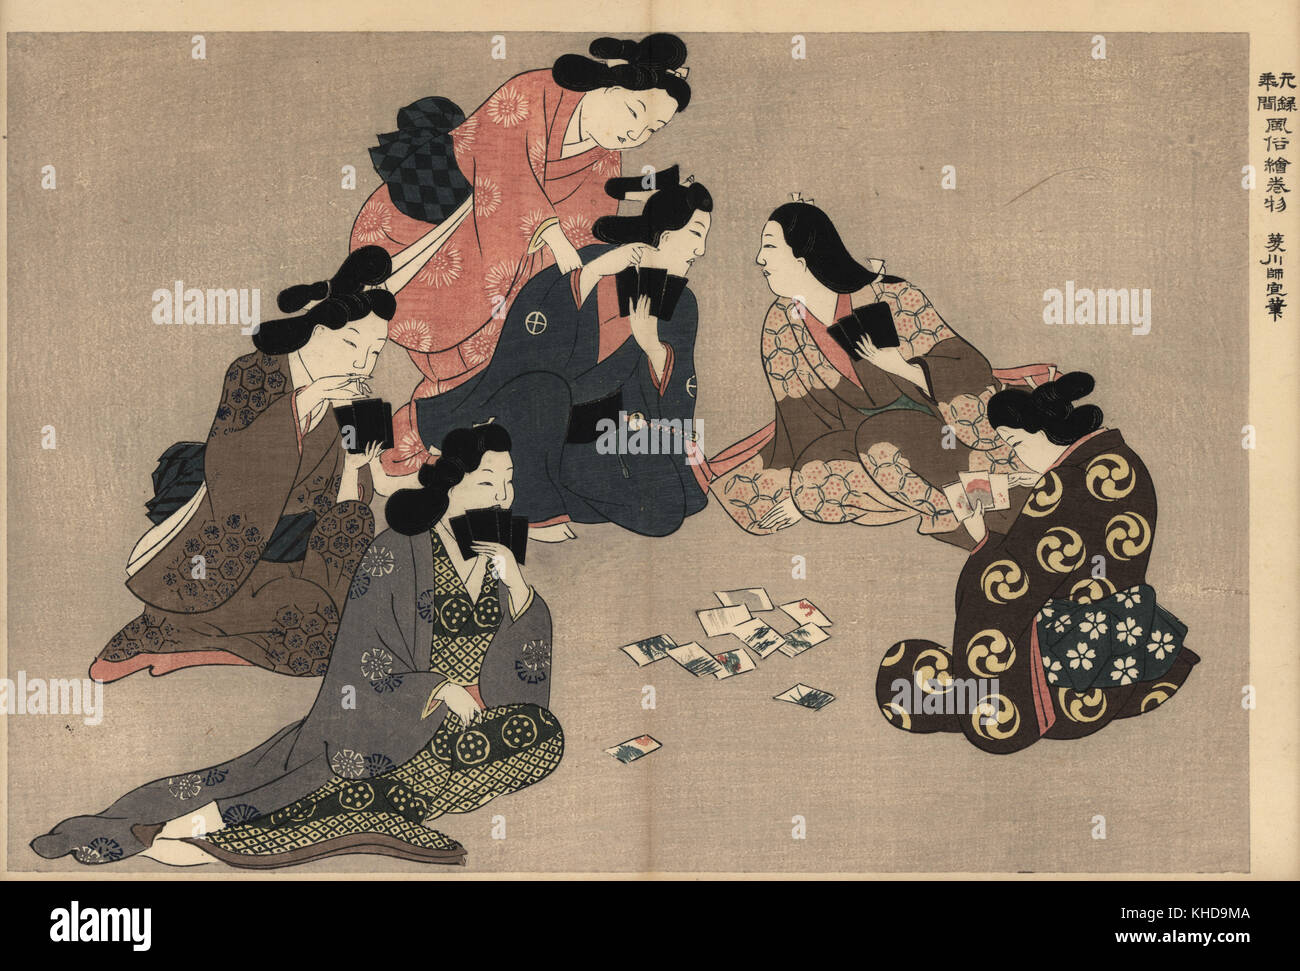 Les courtisanes et femmes de kamuro jouant un jeu de karuta (cartes) avec un client dans le plaisir. Moronobu Hishikawa par gravure sur bois (1618-1694) de Fuzoku Emakimono, rouleau de la commerce de l'eau Tokyo, réimpression vers 1880. Banque D'Images